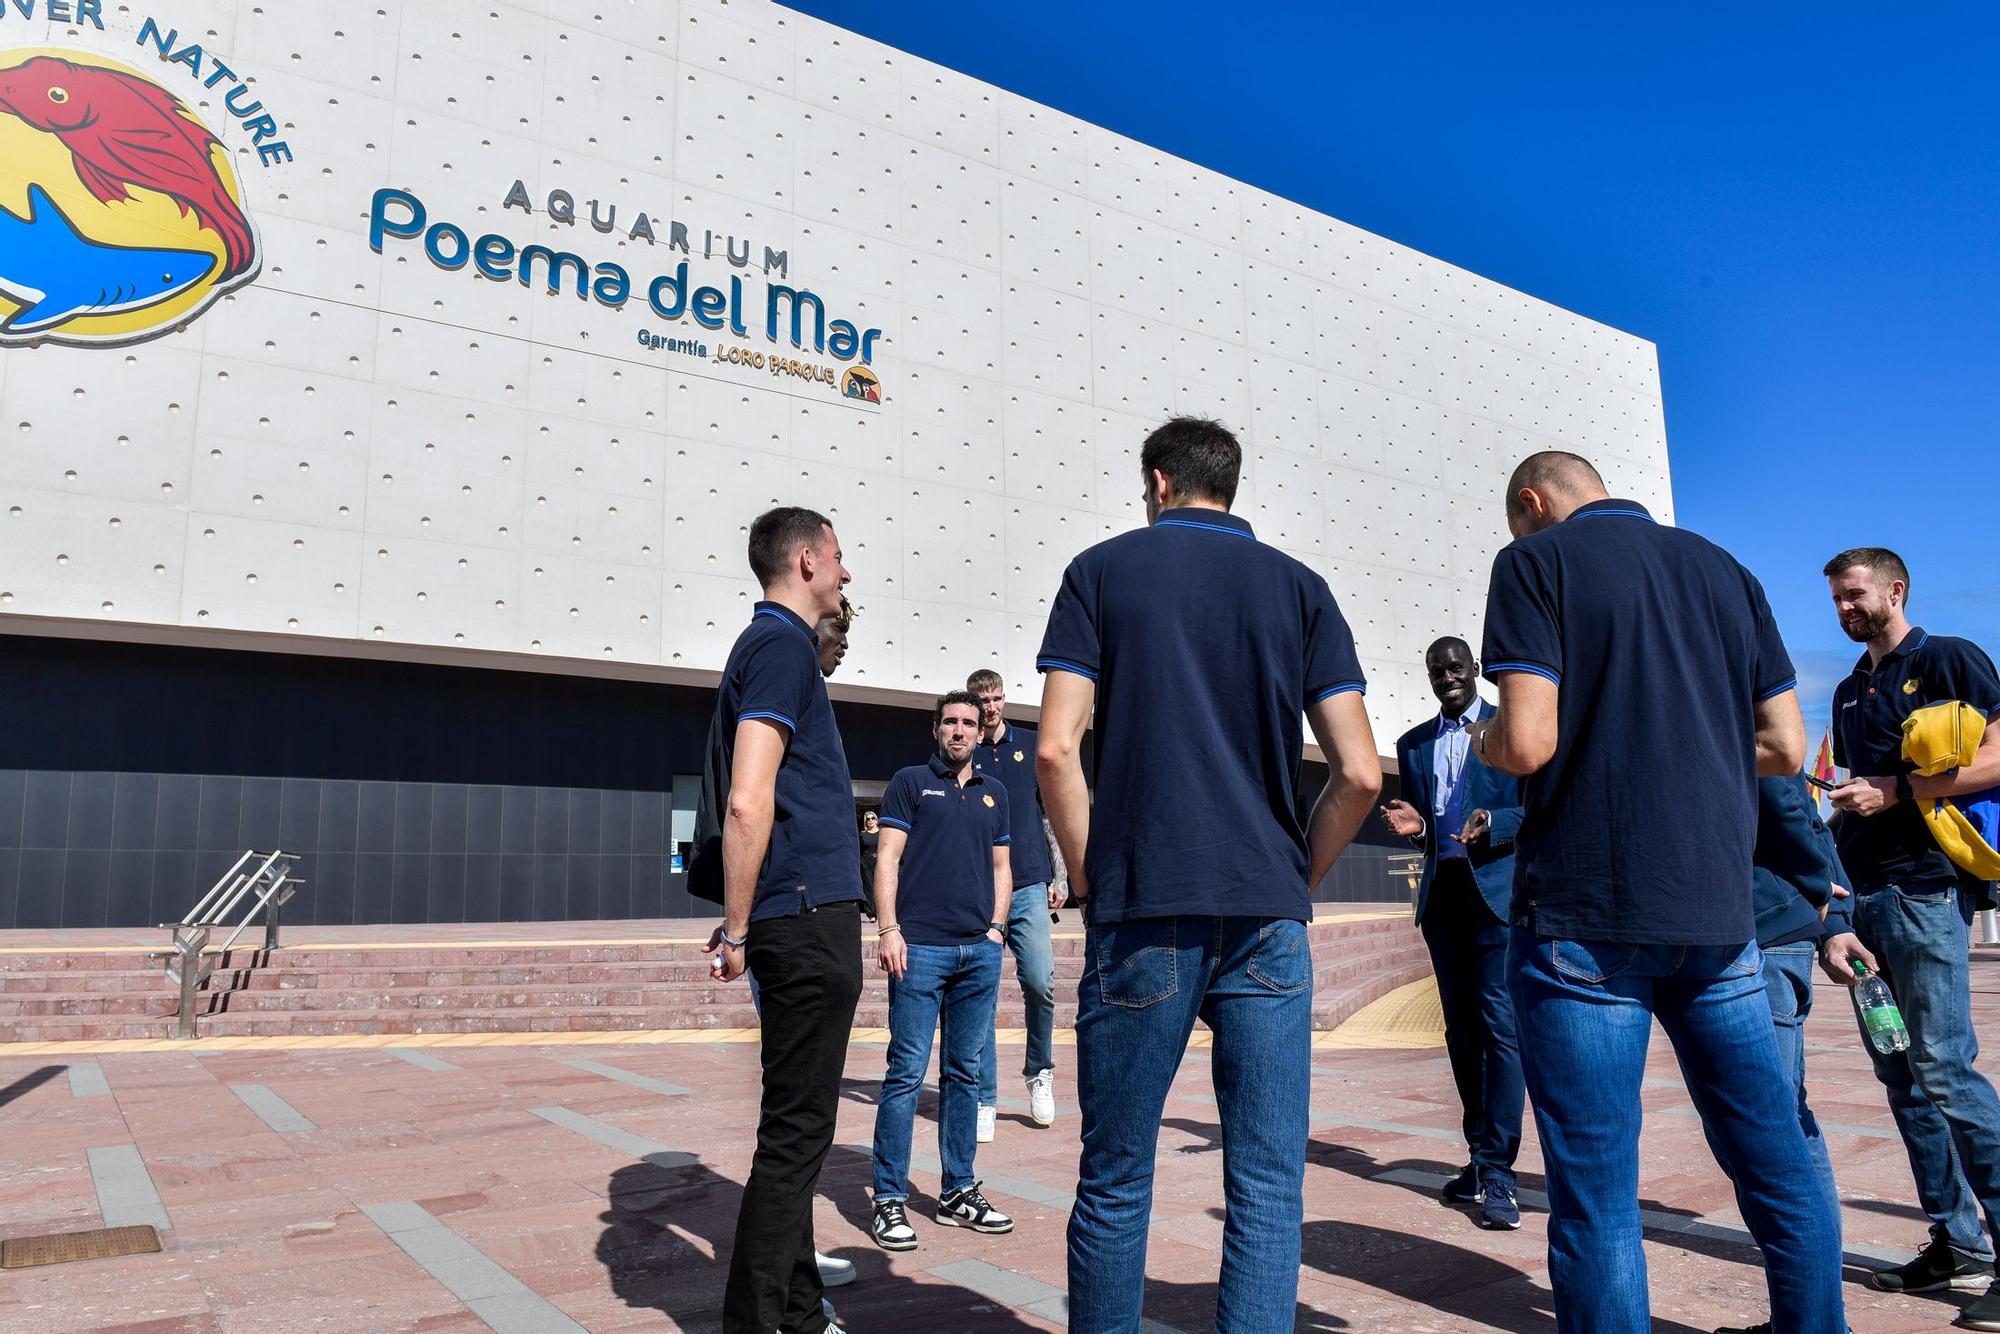 Los jugadores del CB Gran Canaria visitan el acuario Poema del Mar